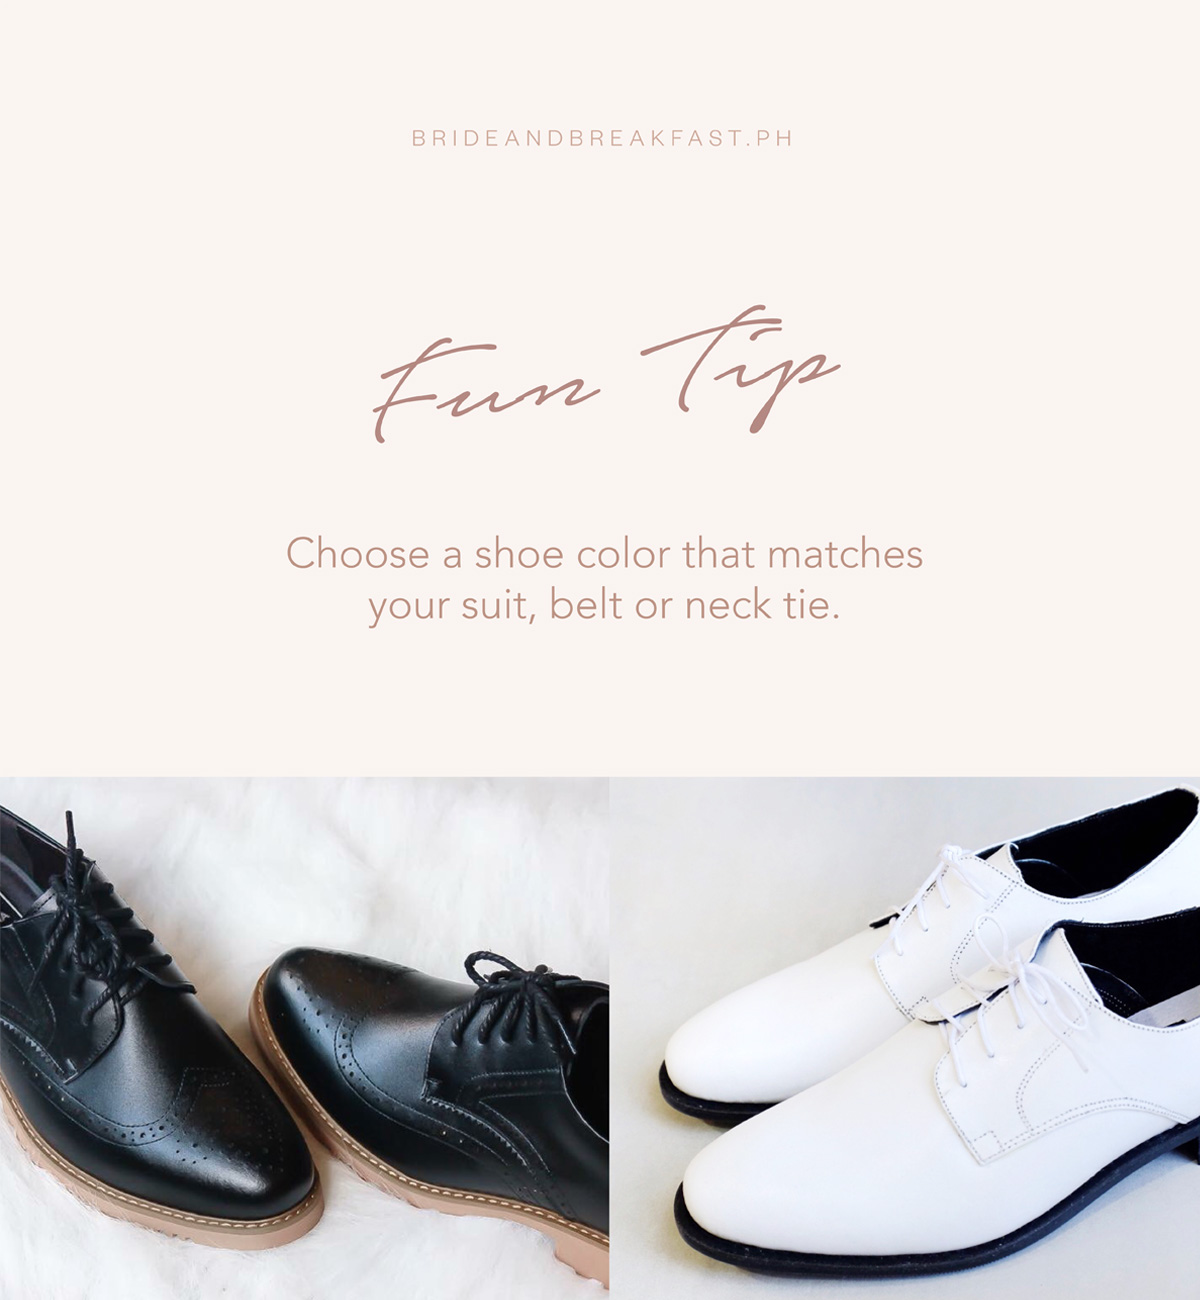 Choose a shoe color that matches your suit, belt, or neck tie.